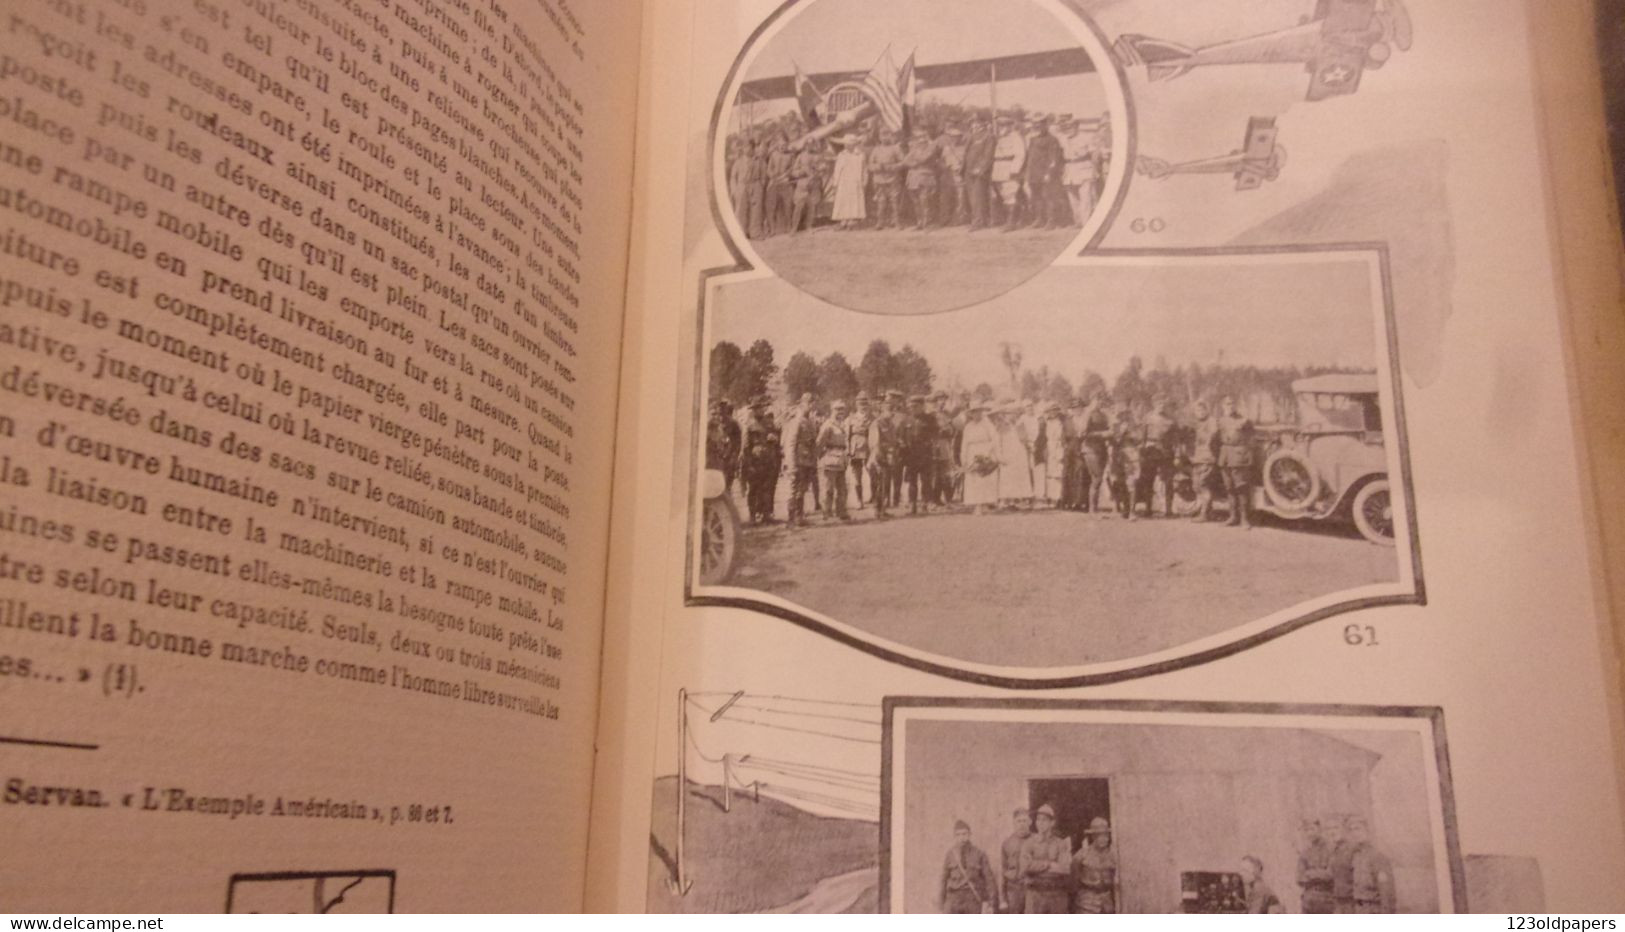 WWI  LES AMERICAINS A GIEVRES LOIR ET CHER BASE LOGISTIQUE ABBE CHAUVEAU 1923 300 PAGES PHOTOS US ARMY